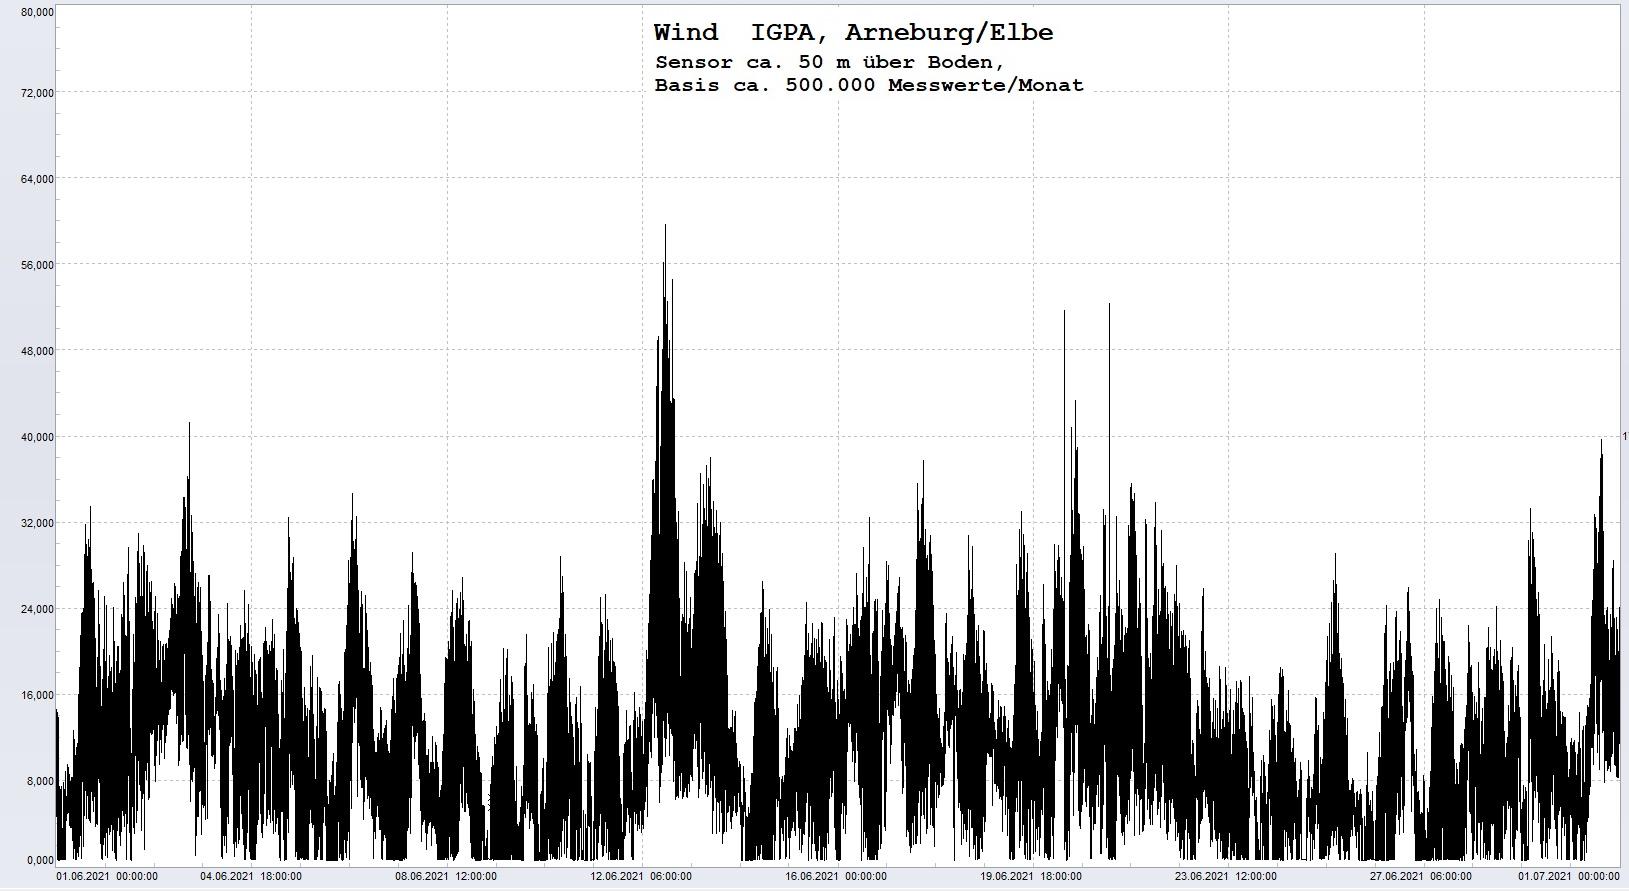 Arneburg Histogramm Winddaten Monat Juni 2021, 
  Sensor auf Gebude, ca. 50 m ber Erdboden, Basis: 5s-Aufzeichnung